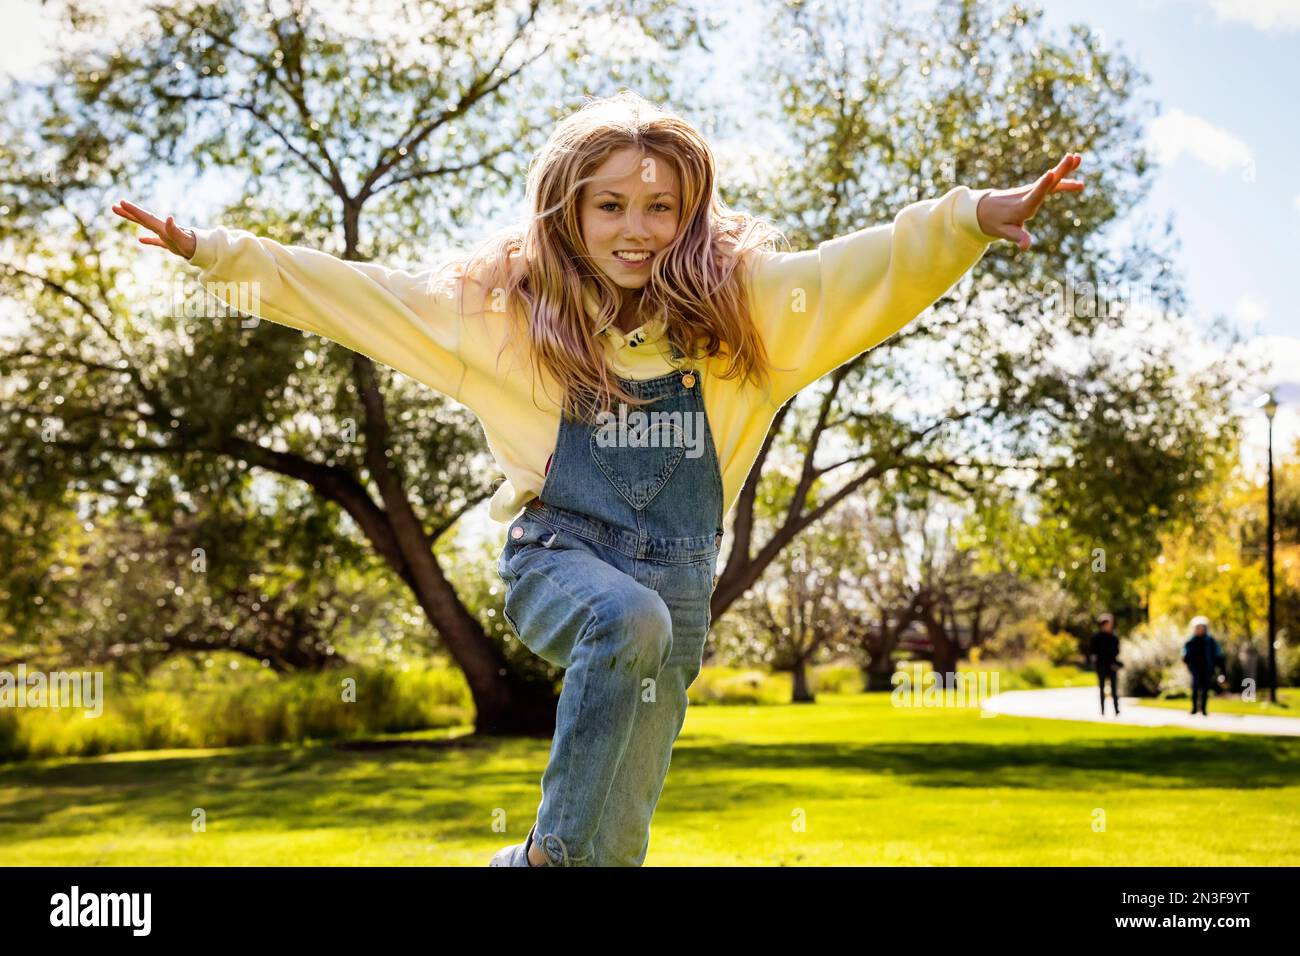 Ein junges Mädchen mit langen blonden Haaren läuft über das Gras und springt an einem warmen Herbsttag in einem Stadtpark auf die Kamera zu Stockfoto